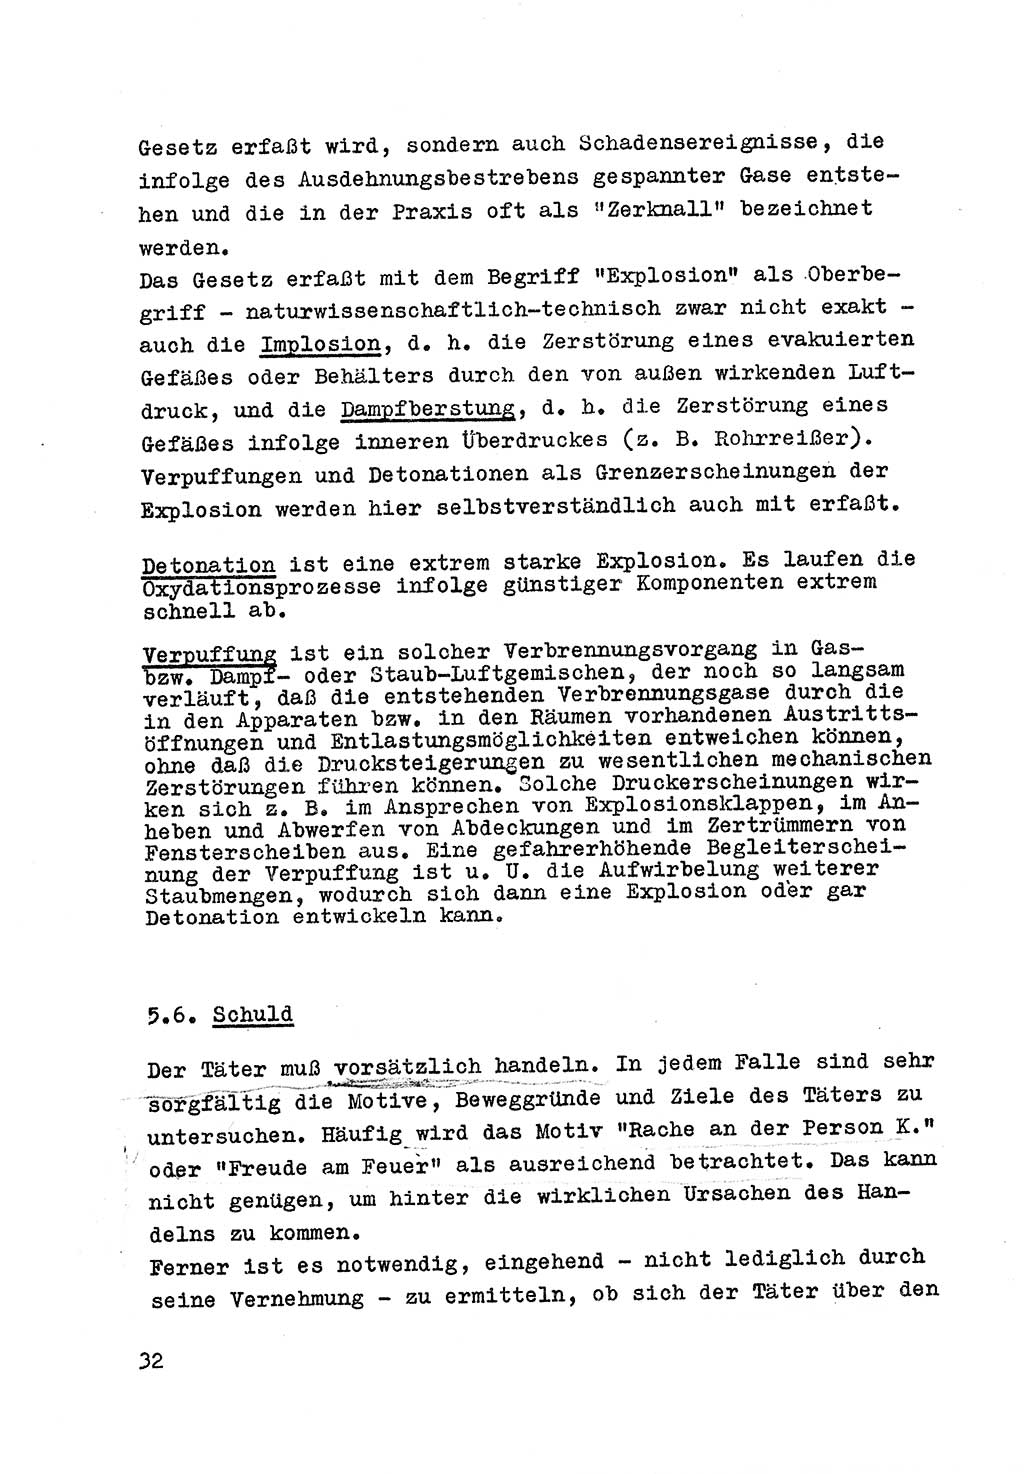 Strafrecht der DDR (Deutsche Demokratische Republik), Besonderer Teil, Lehrmaterial, Heft 7 1970, Seite 32 (Strafr. DDR BT Lehrmat. H. 7 1970, S. 32)